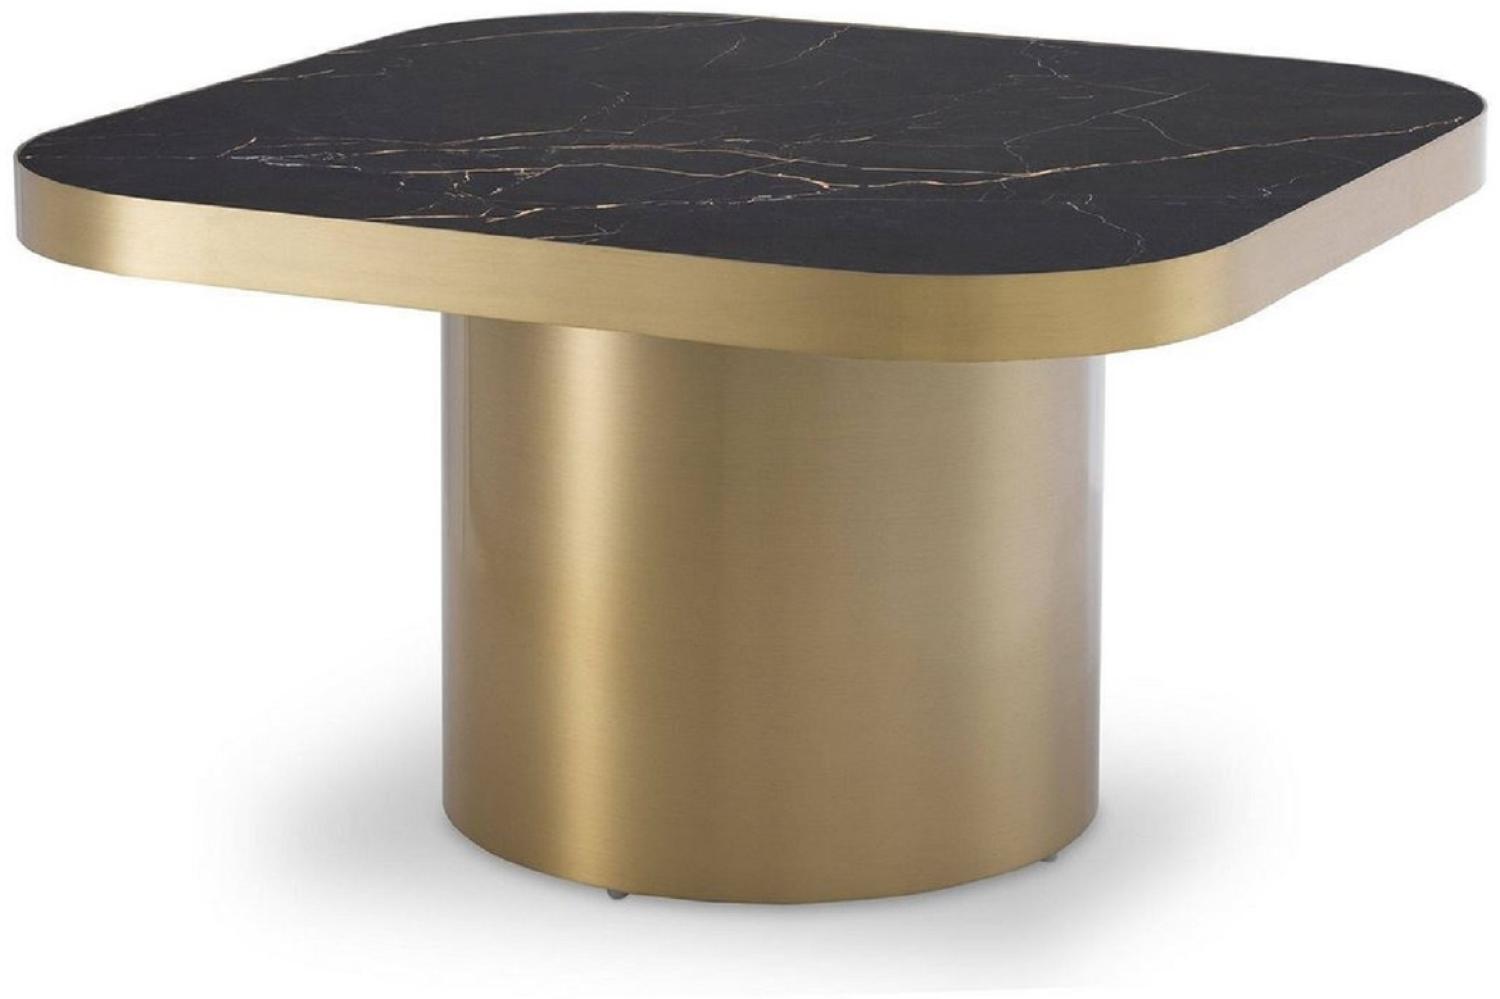 Casa Padrino Luxus Beistelltisch Schwarz / Messingfarben 64 x 64 x H. 37,5 cm - Quadratischer Edelstahl Tisch mit Keramikplatte - Wohnzimmer Möbel - Luxus Möbel Bild 1